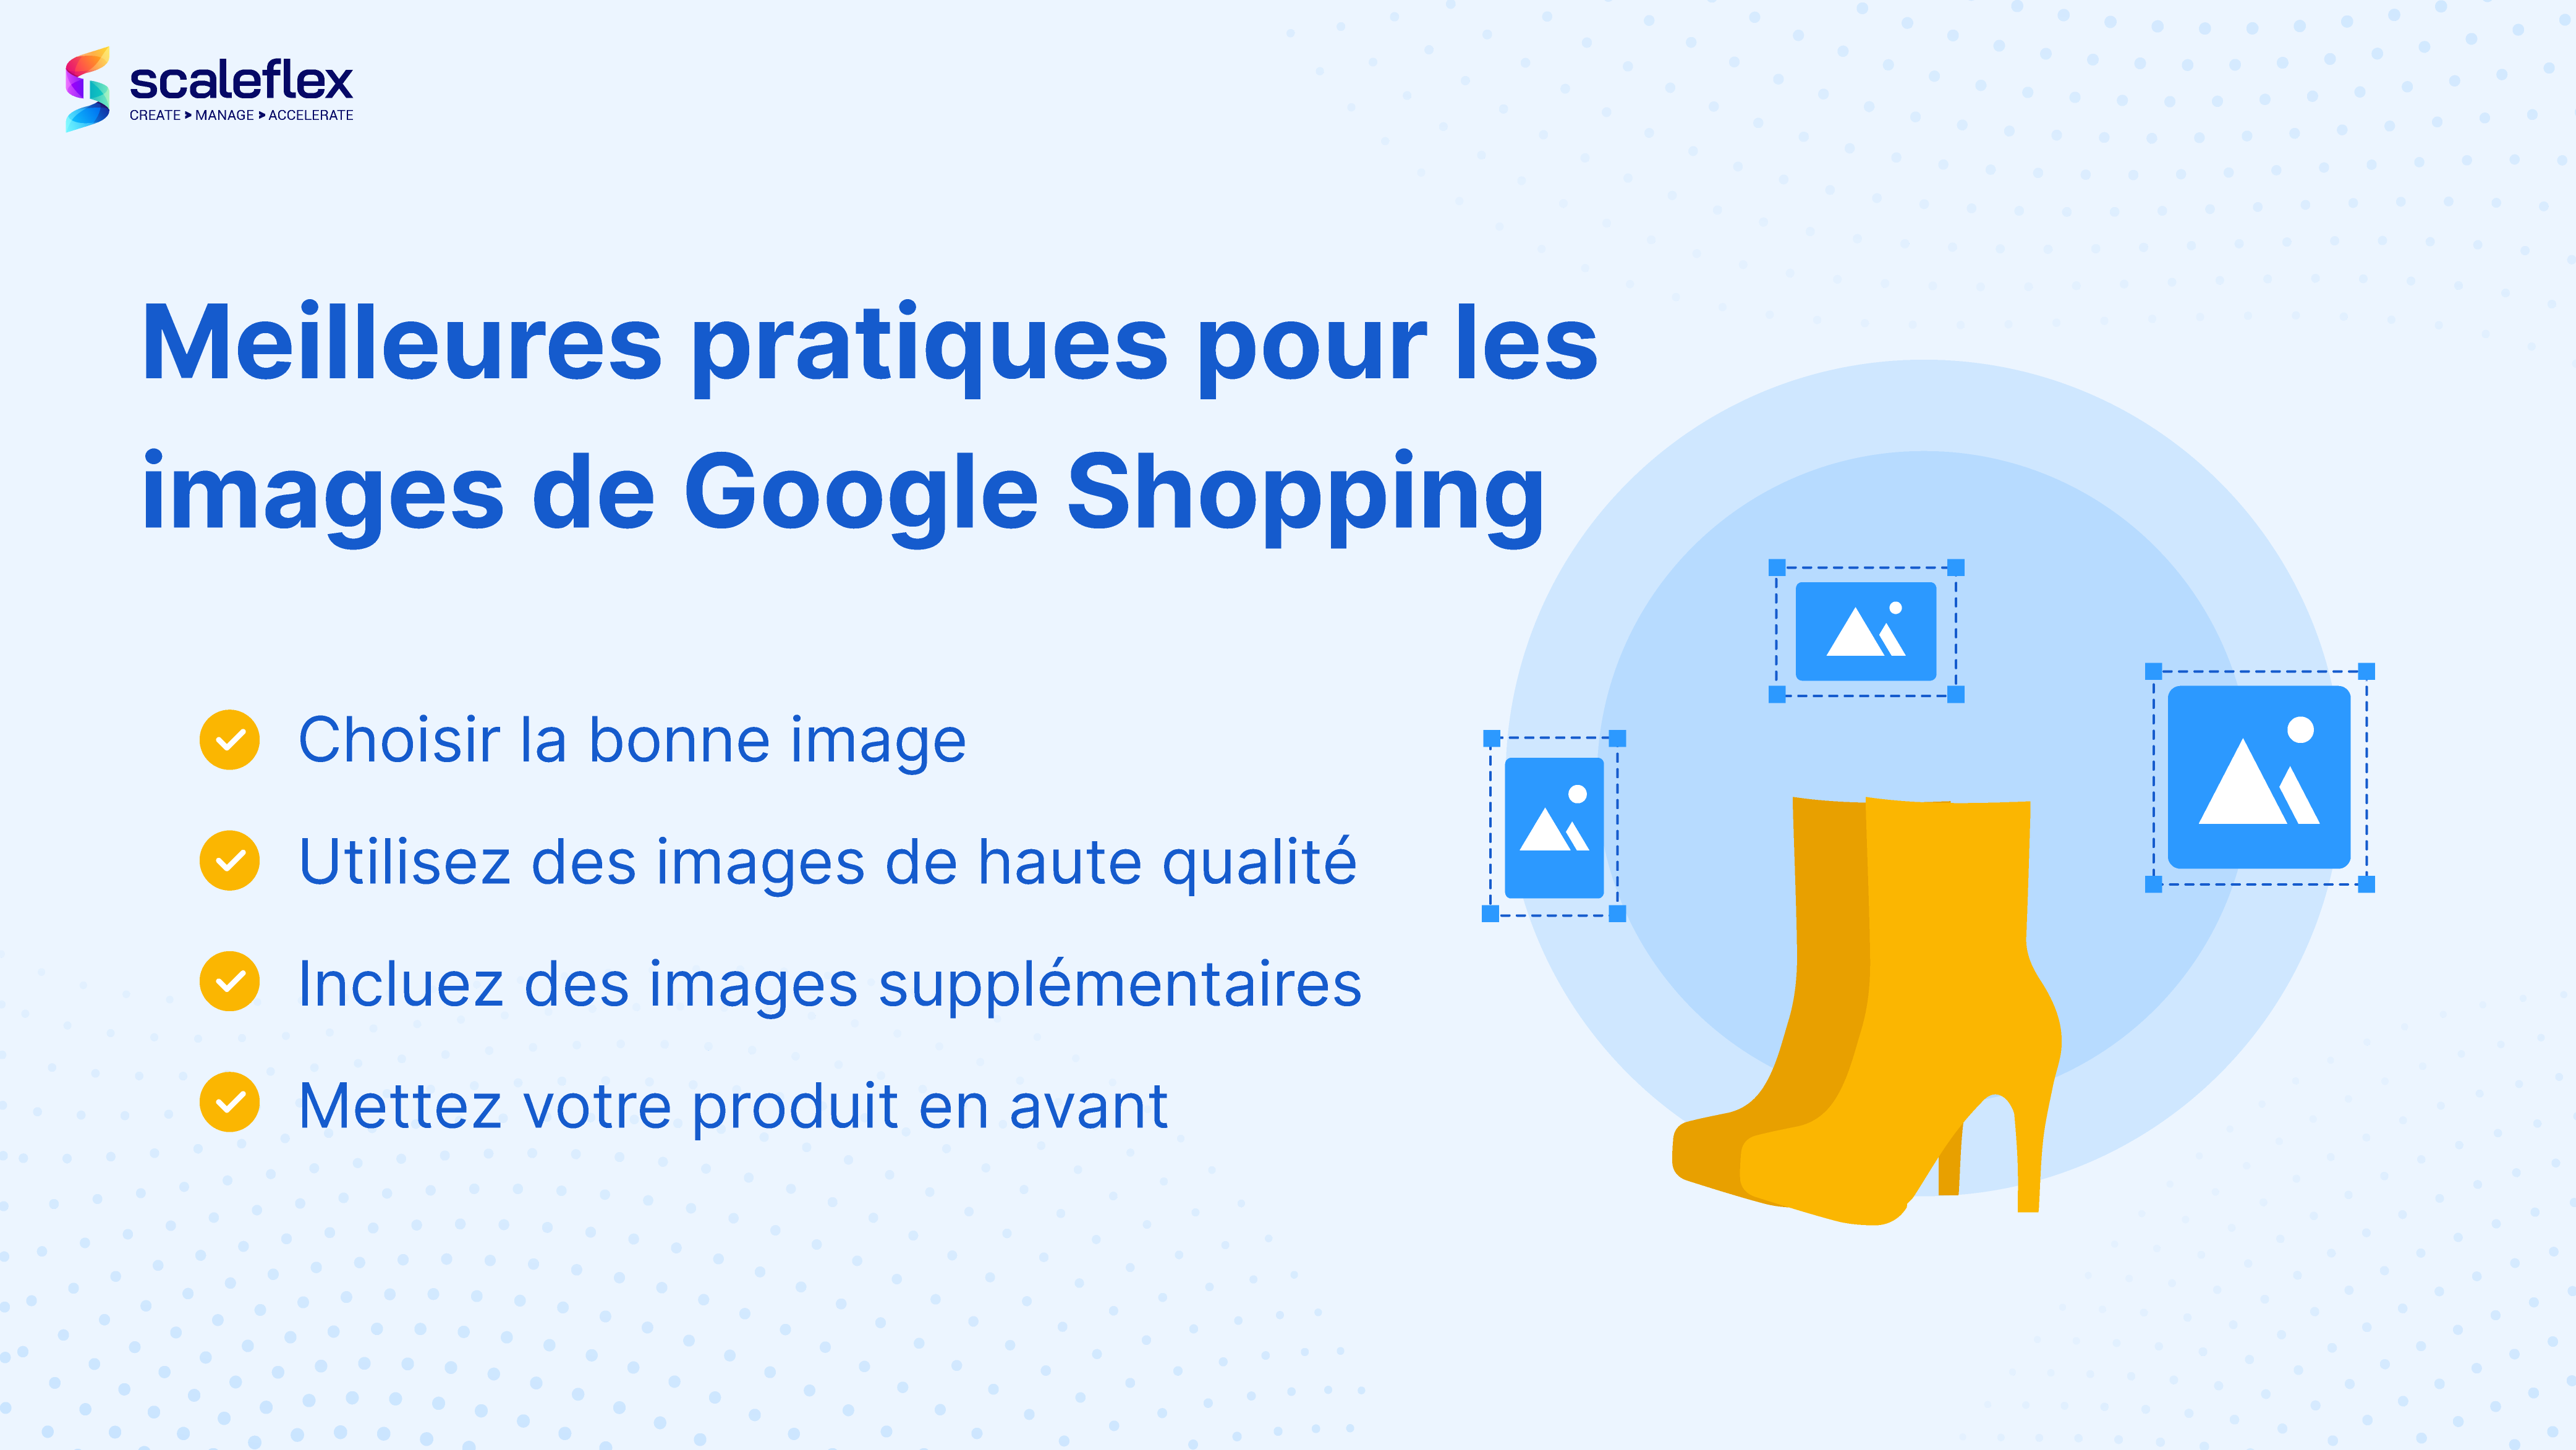 Meilleures pratiques pour les images de Google Shopping